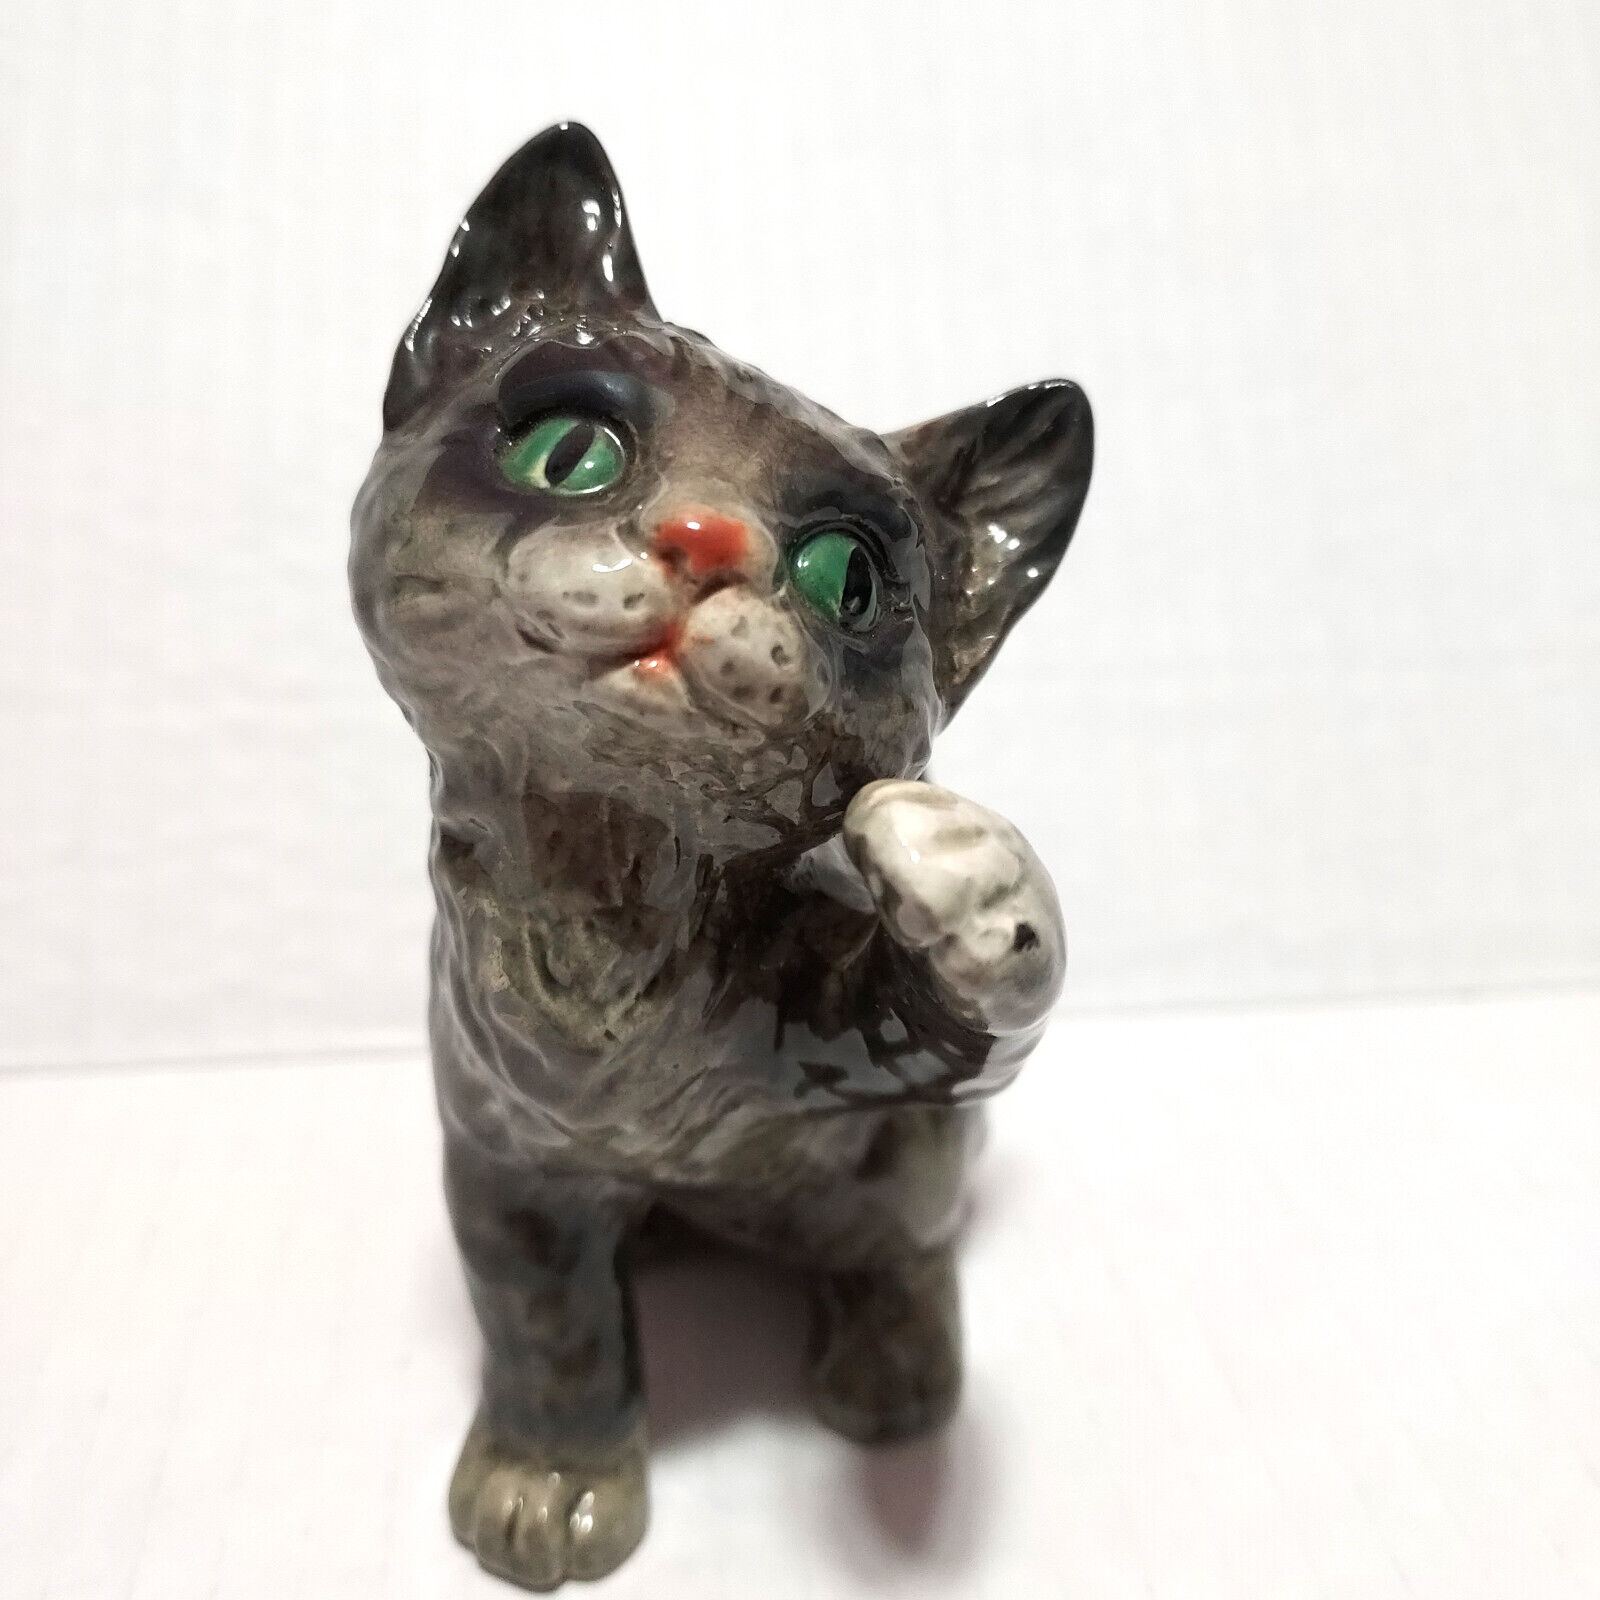 Vintage Goebel Cat Figurine 4.5” Gray Tabby Kitten w/ Green Eyes